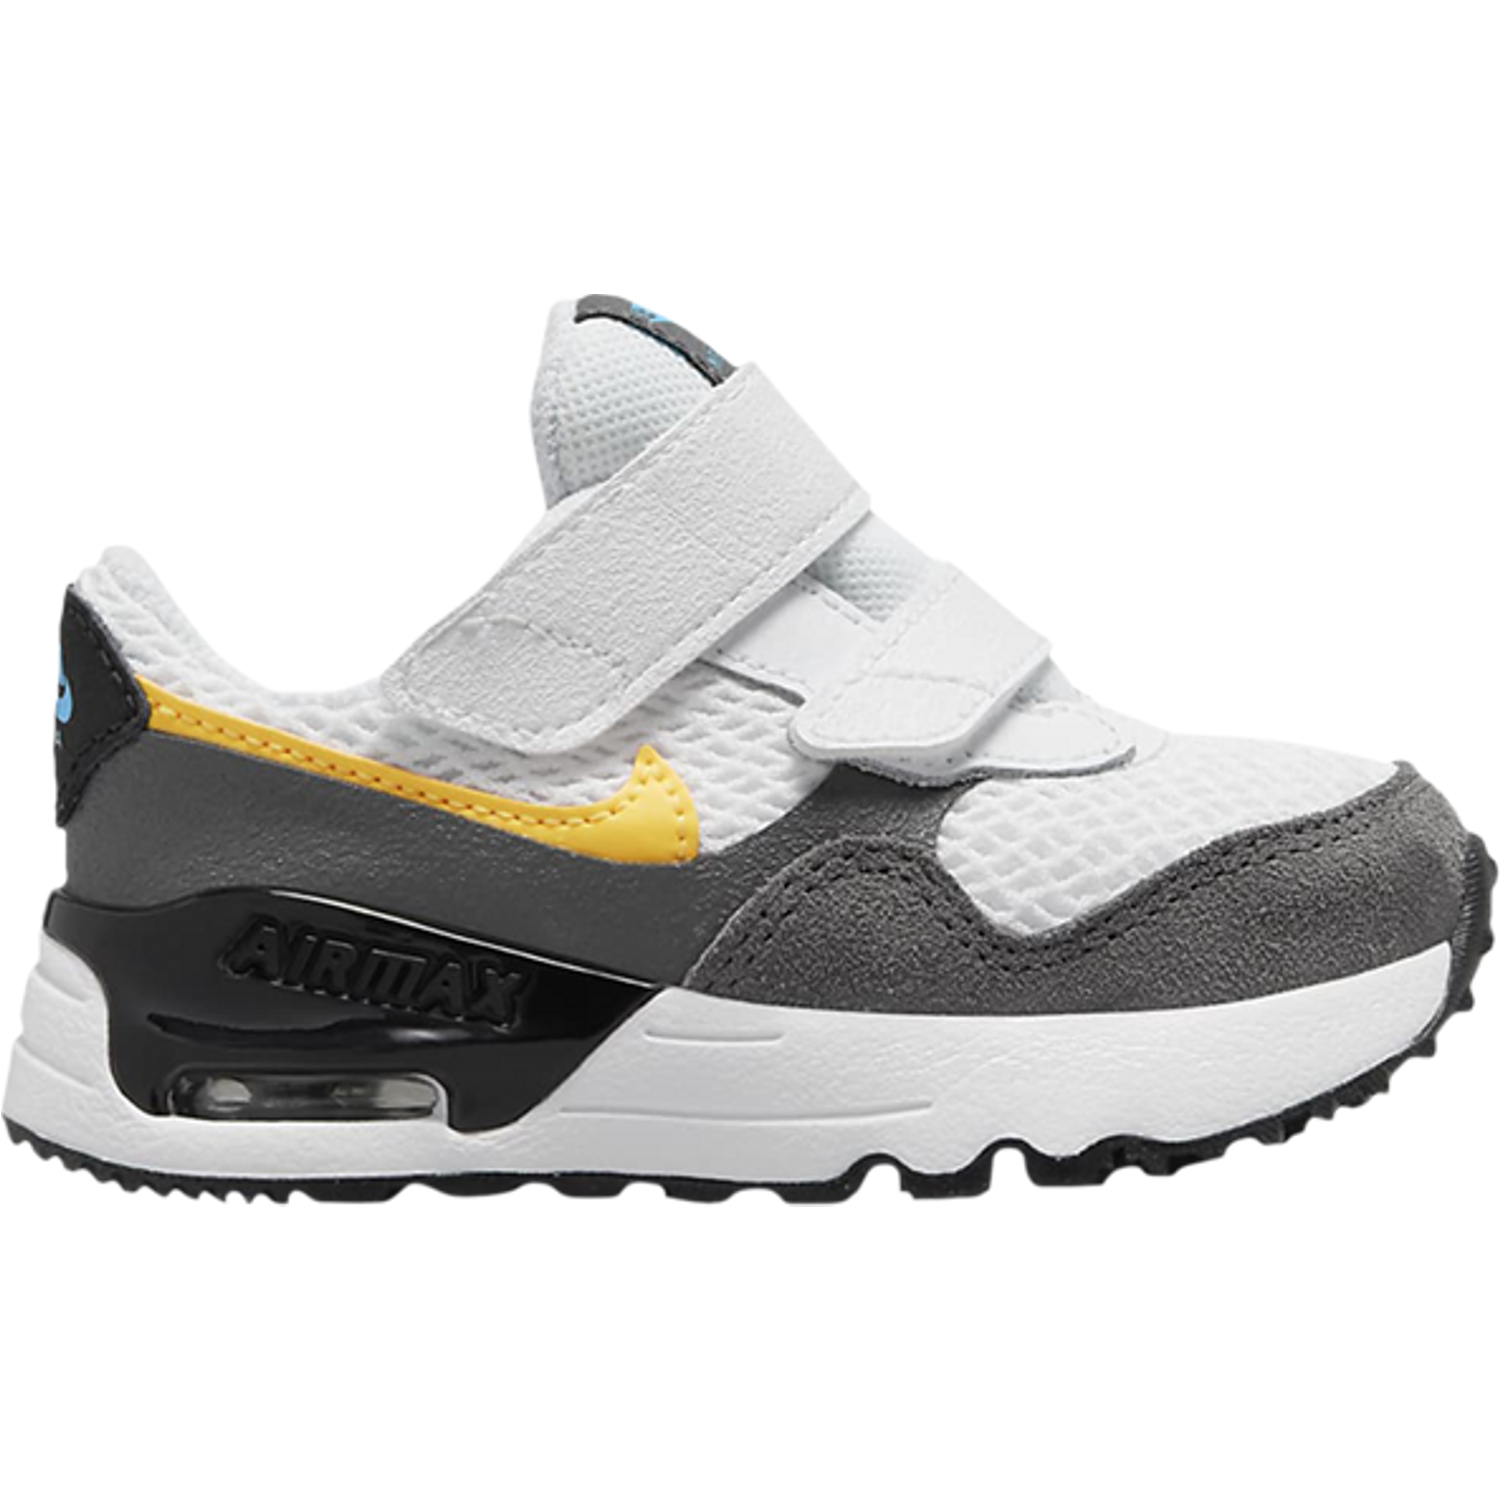 Кроссовки для малышей Nike Air Max Systm TD, бело-серый кроссовки nike air max systm gs dark smoke grey flat pewter серый